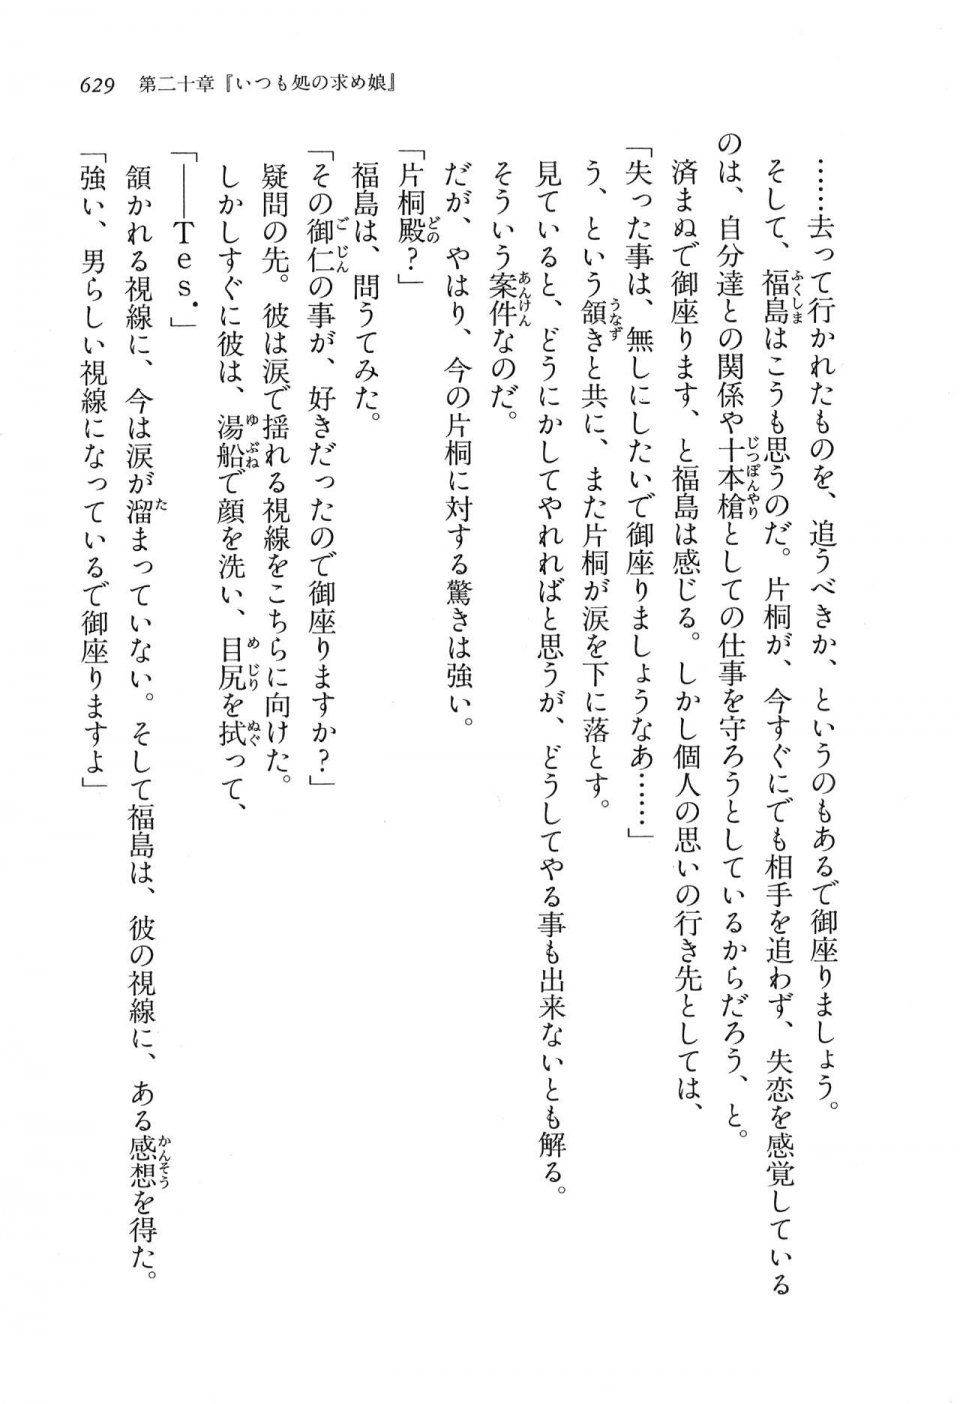 Kyoukai Senjou no Horizon LN Vol 16(7A) - Photo #629